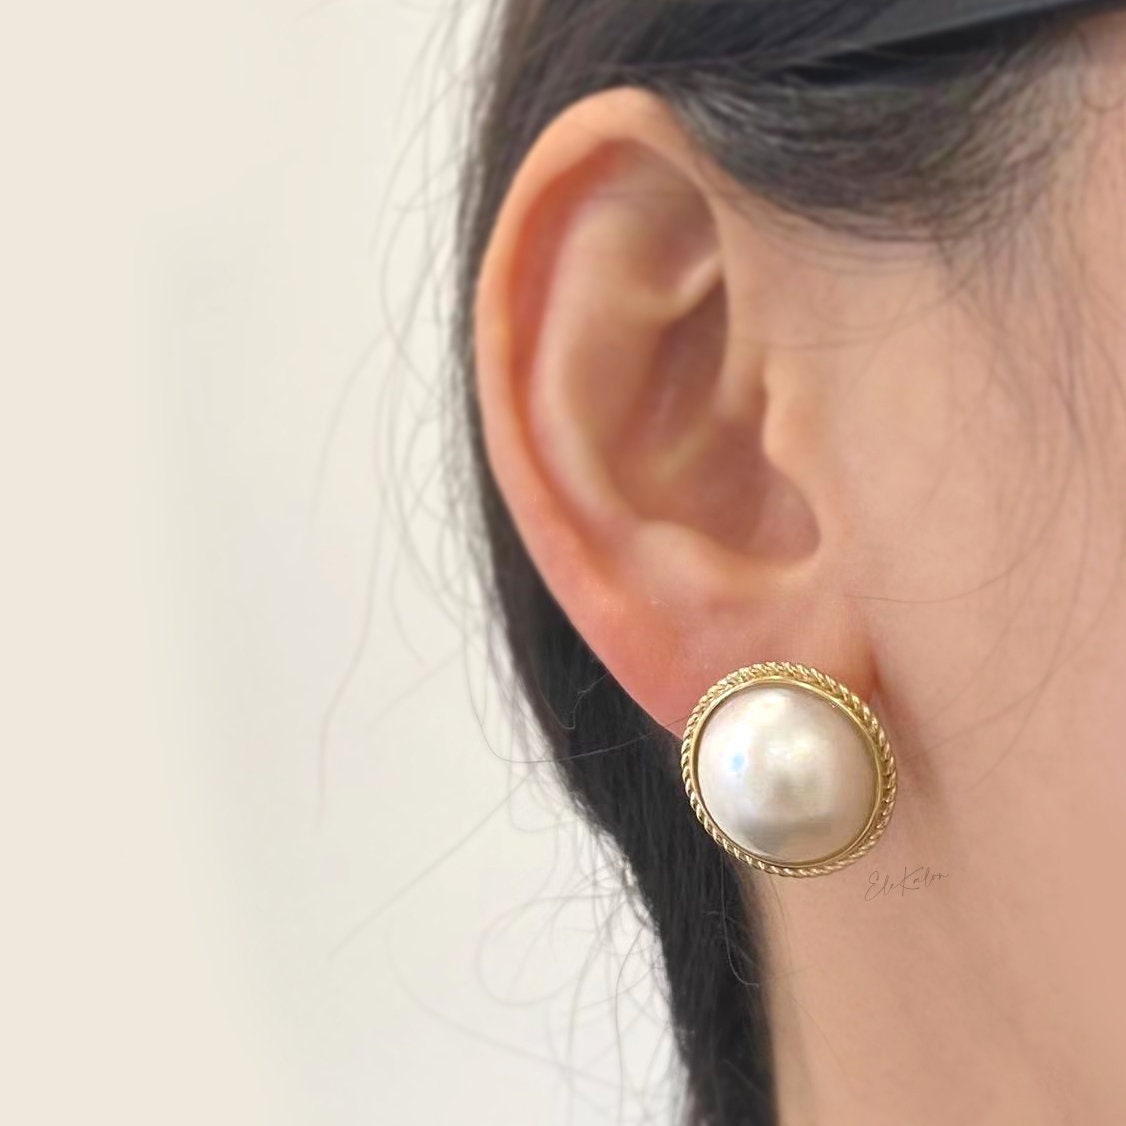 Share 69+ mabe pearl earrings super hot - 3tdesign.edu.vn